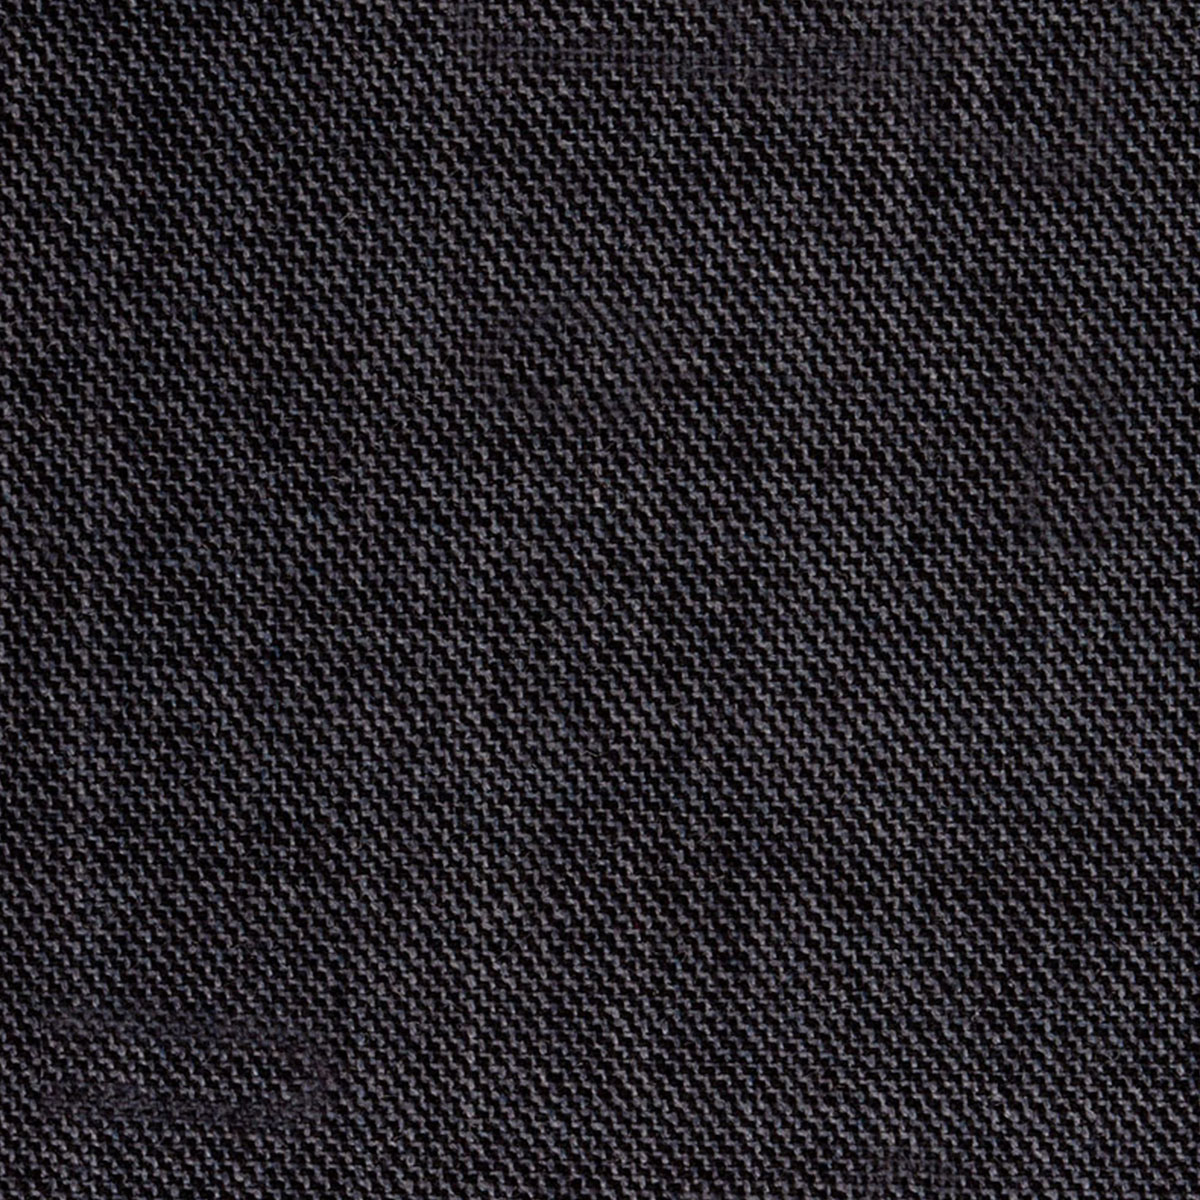 Stoff aus einer Woll-Polyester-Elasthan-Mischung